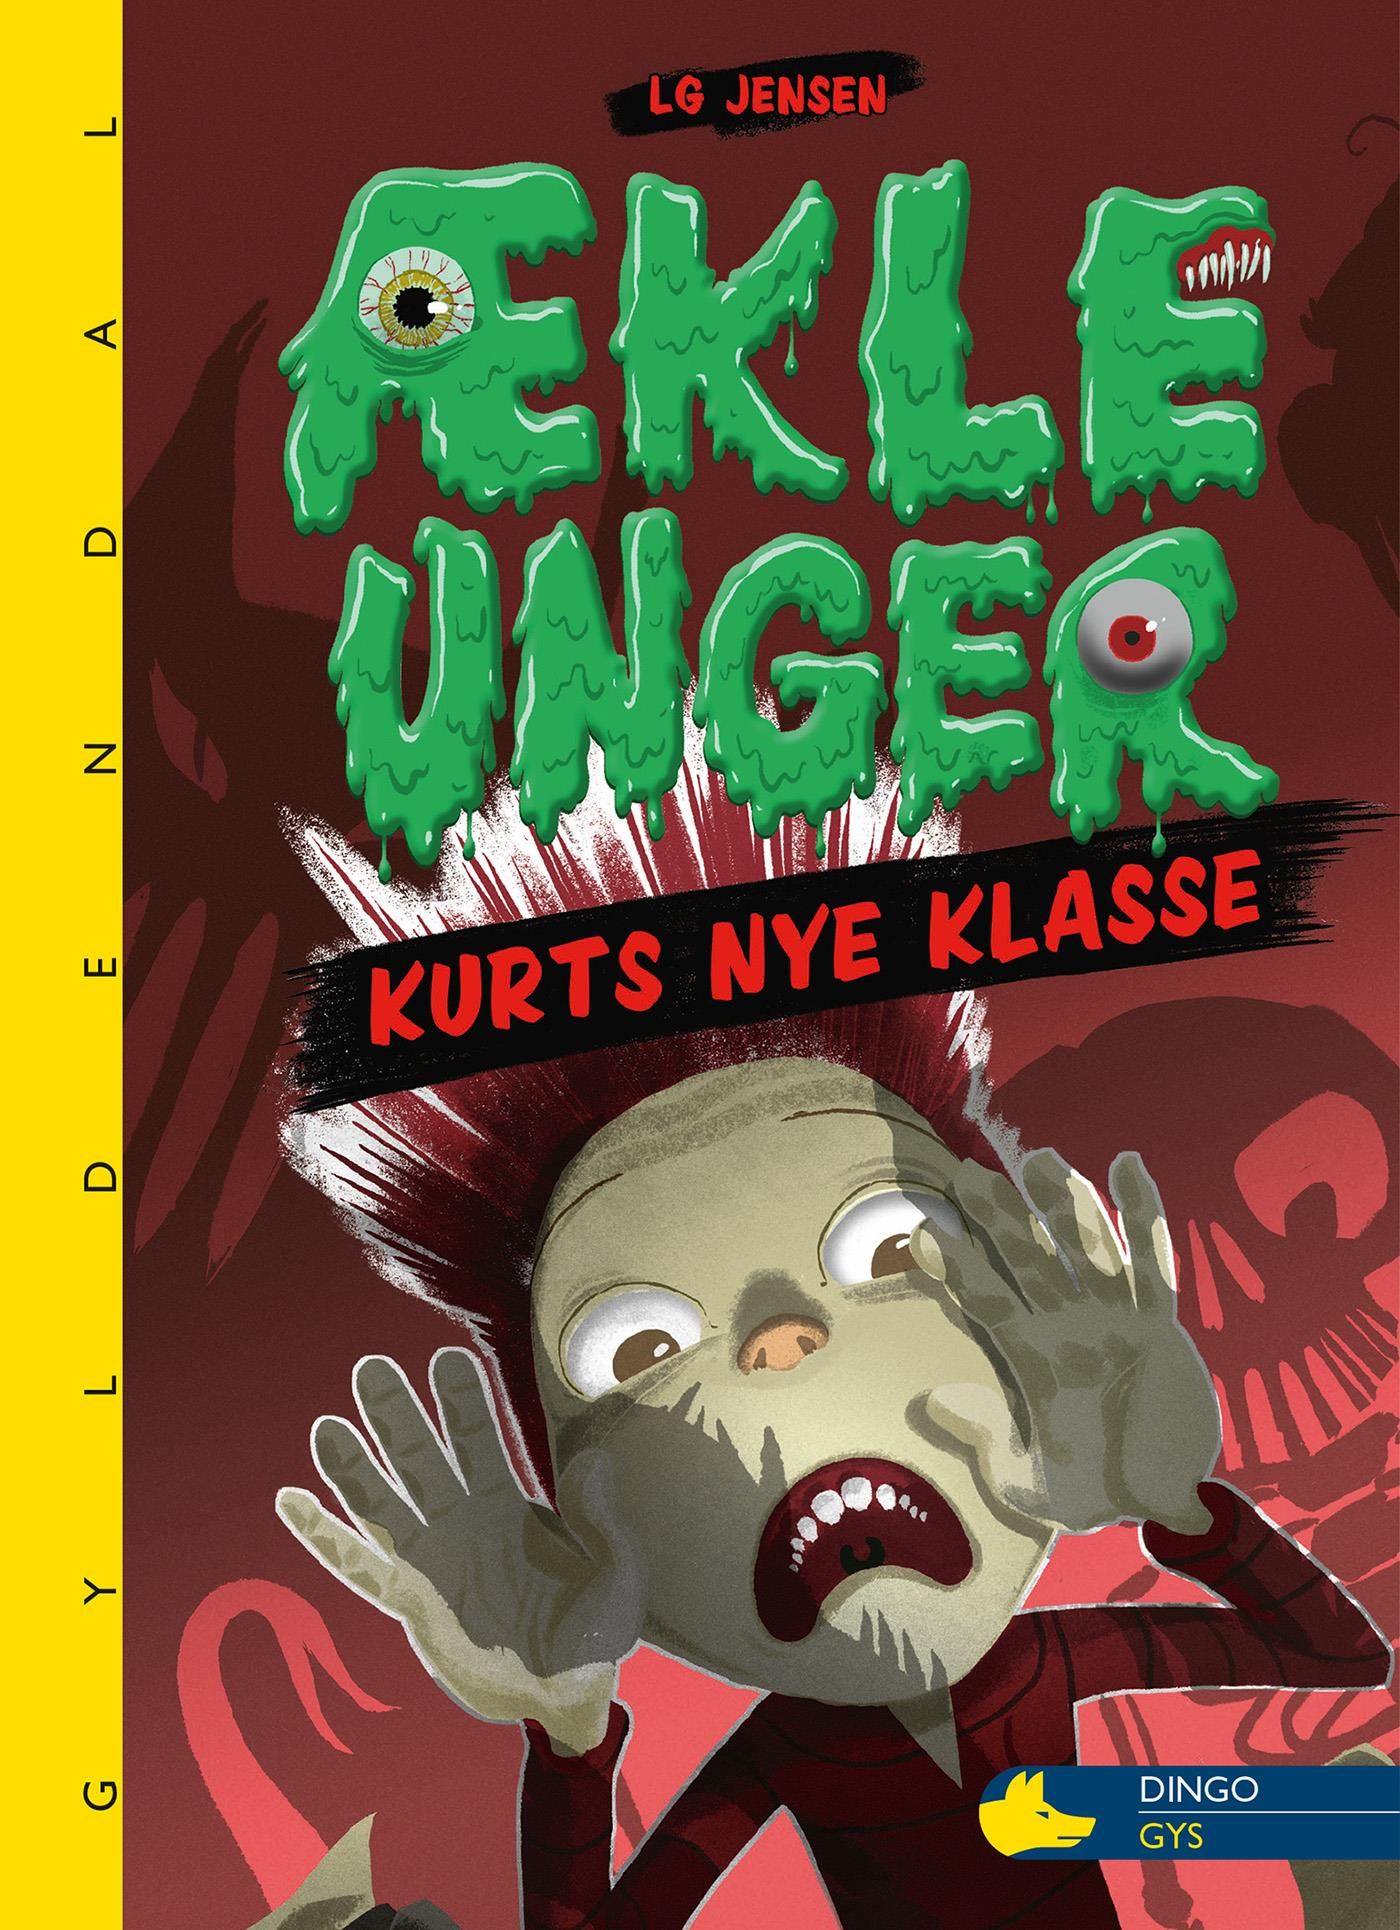 ÆKLE UNGER - Kurts nye klasse, e-bok av LG Jensen